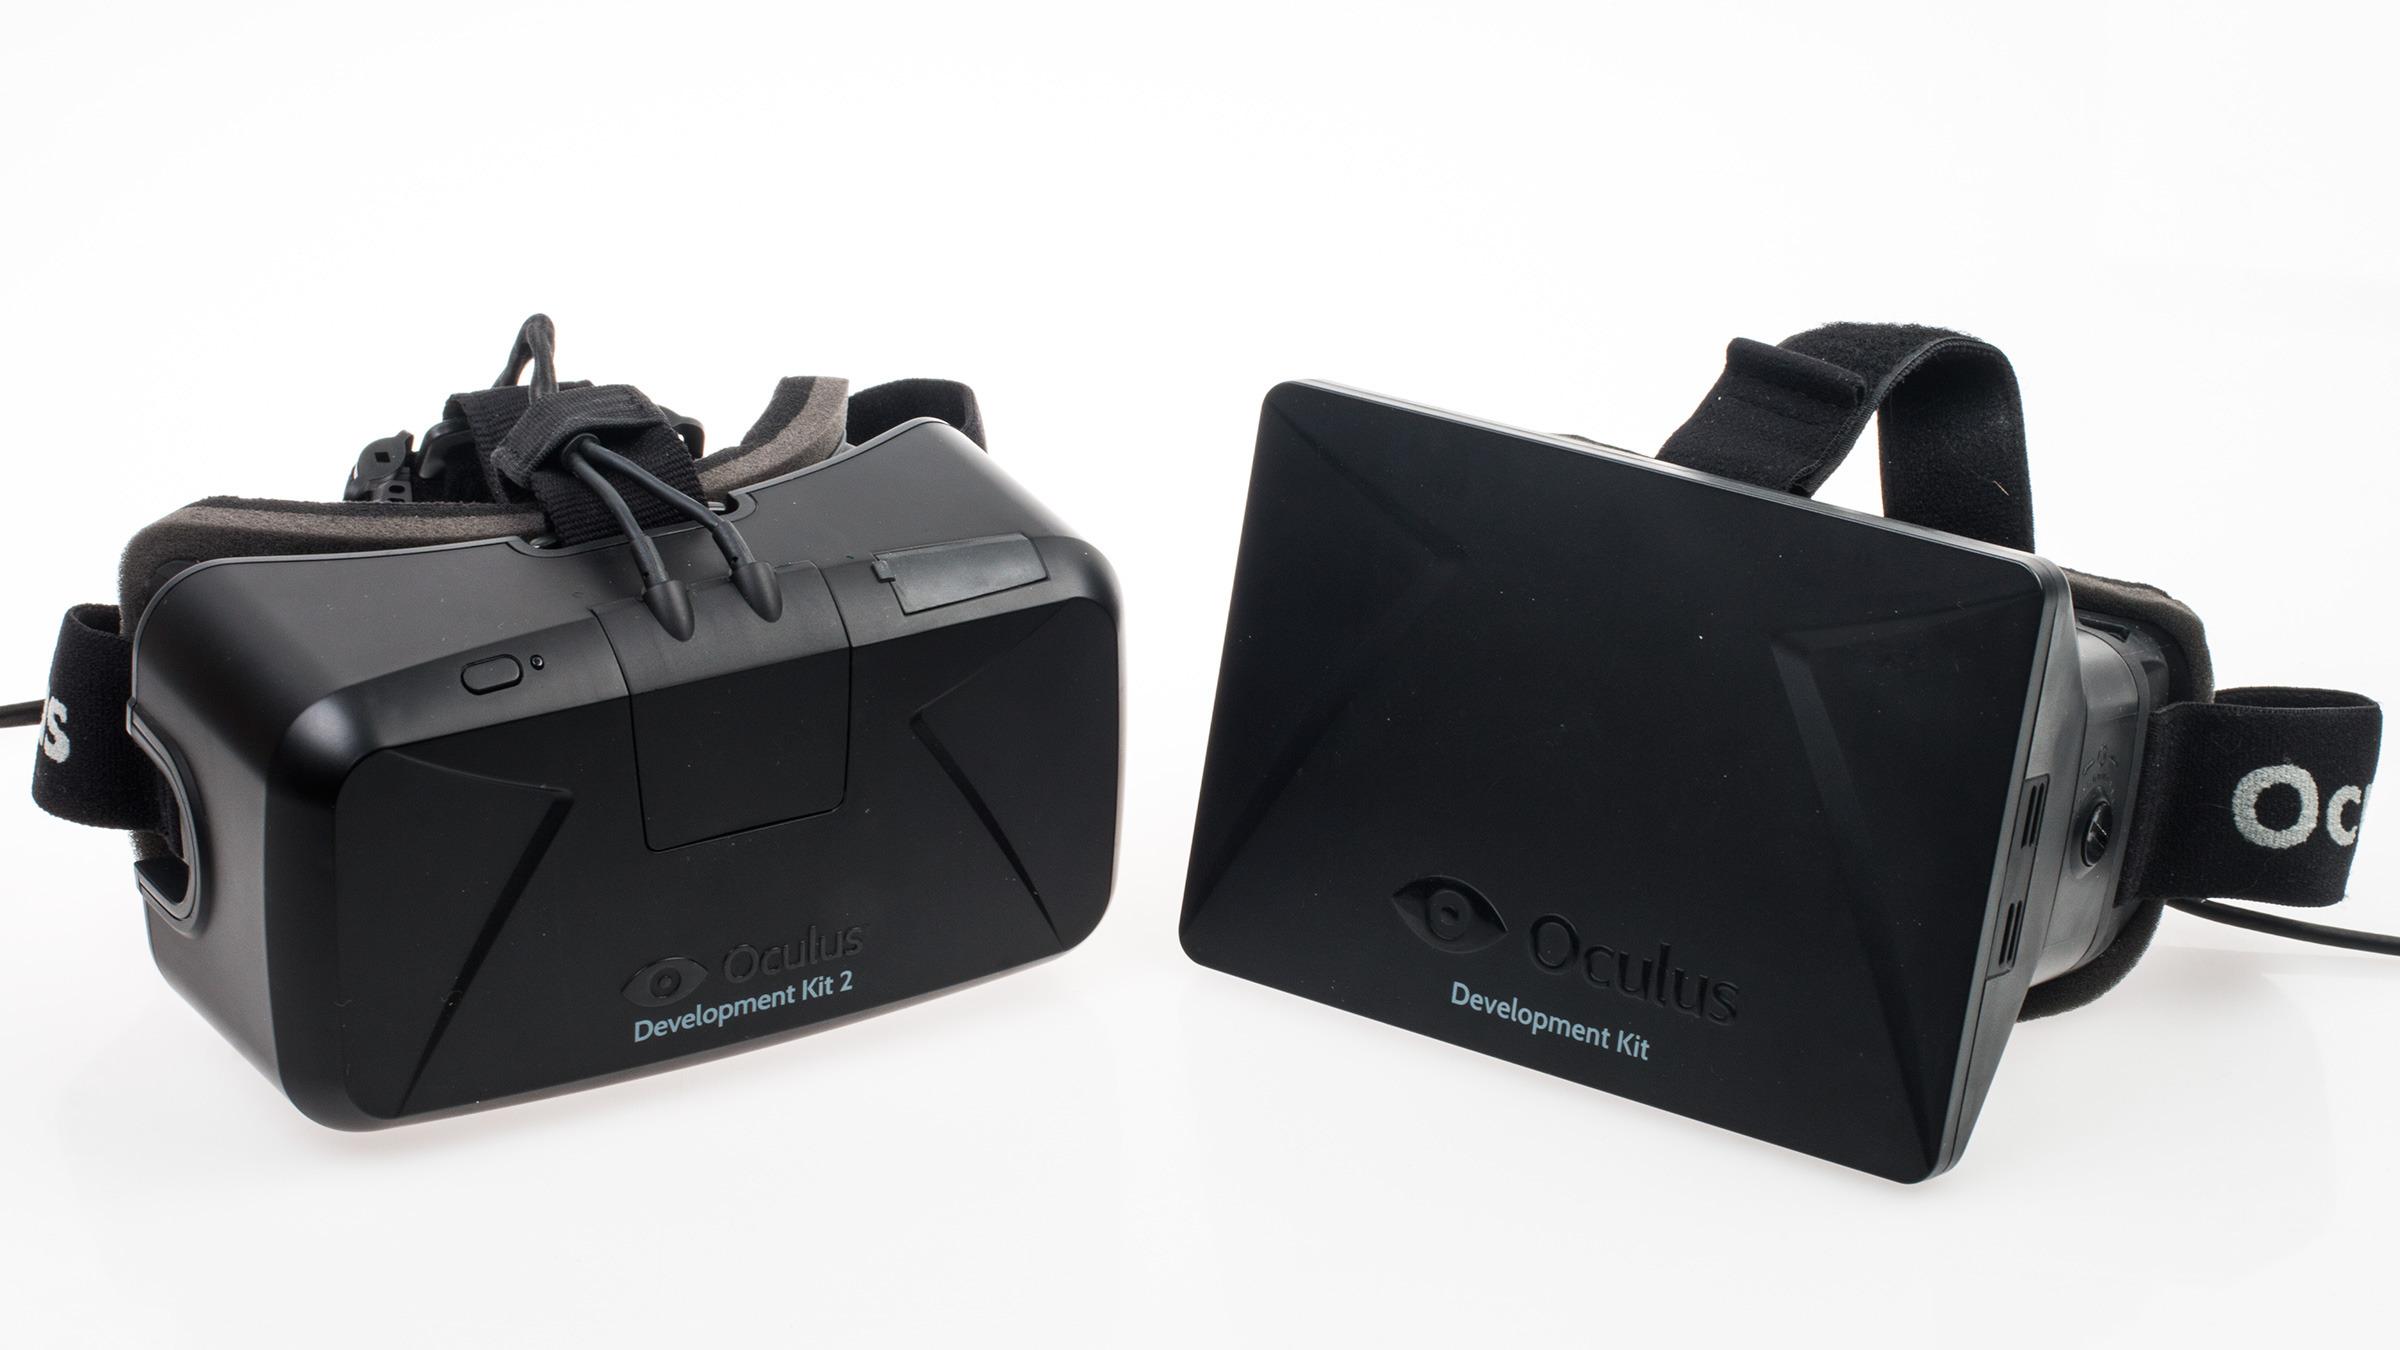 Oculus Rift DK2 har kommet uhorvelig langt sammenliknet med den ett år eldre Oculus Rift Development Kit. Det gjør det lettere å se problemene som fortsatt finnes.Foto: Varg Aamo, Tek.no